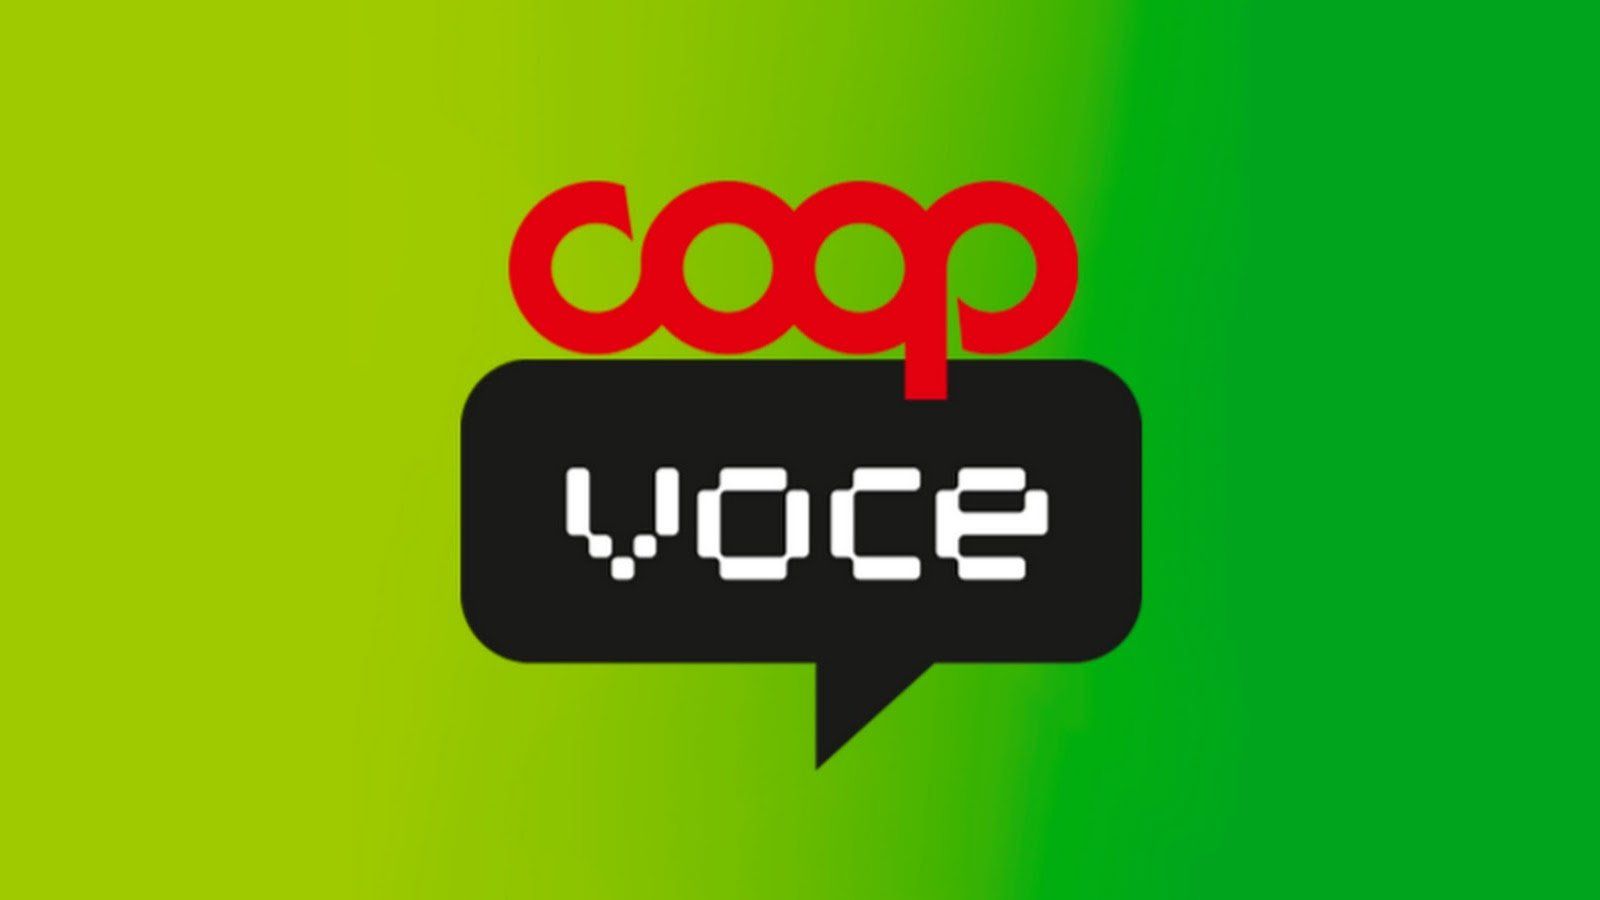 CoopVoce: scontro con TIM e Vodafone, nuova offerta incredibile con minuti e giga